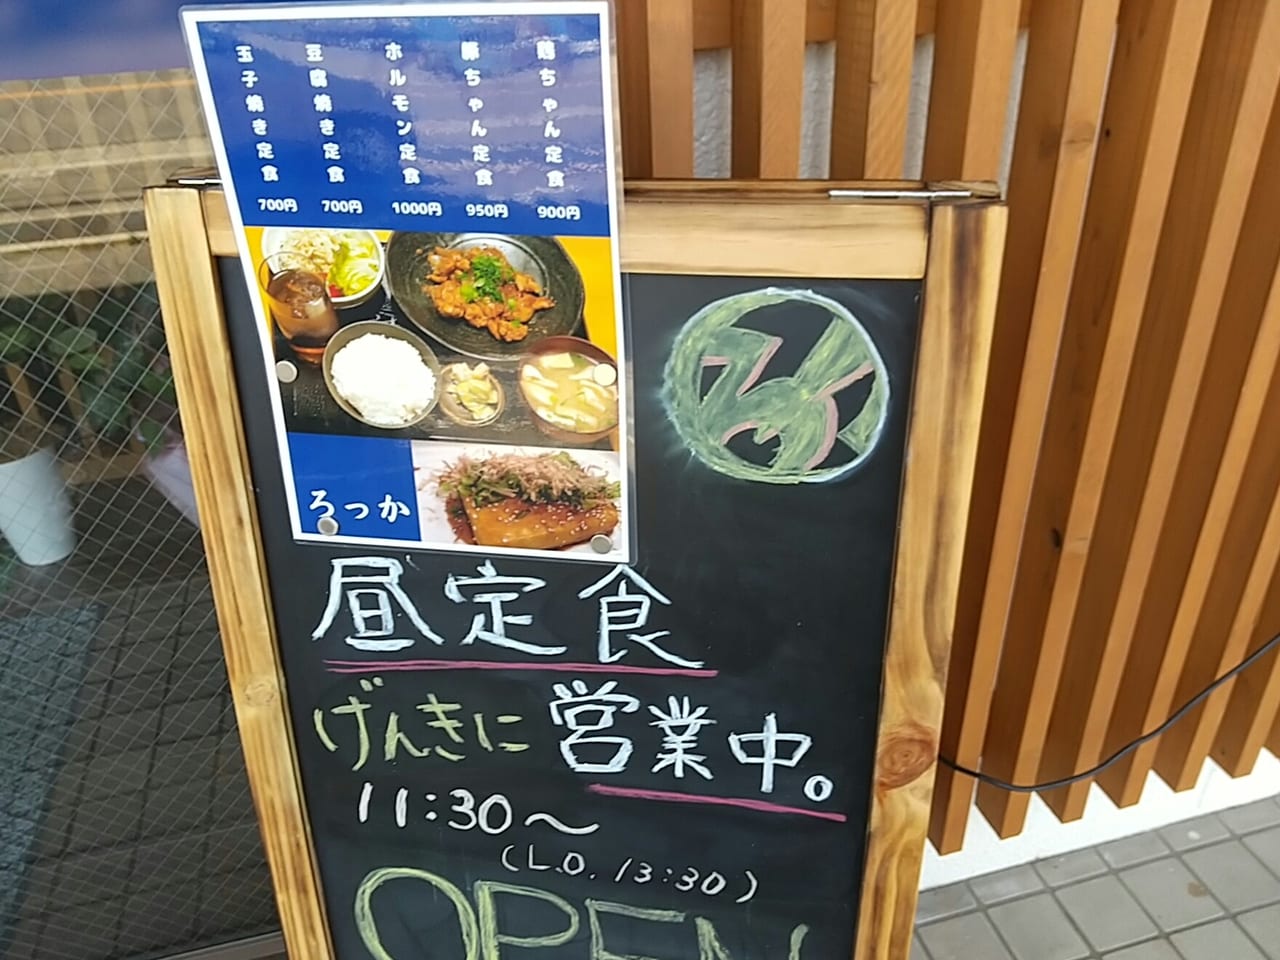 「ろっか」鶏ちゃん(岐阜県の郷土料理)がある居酒屋